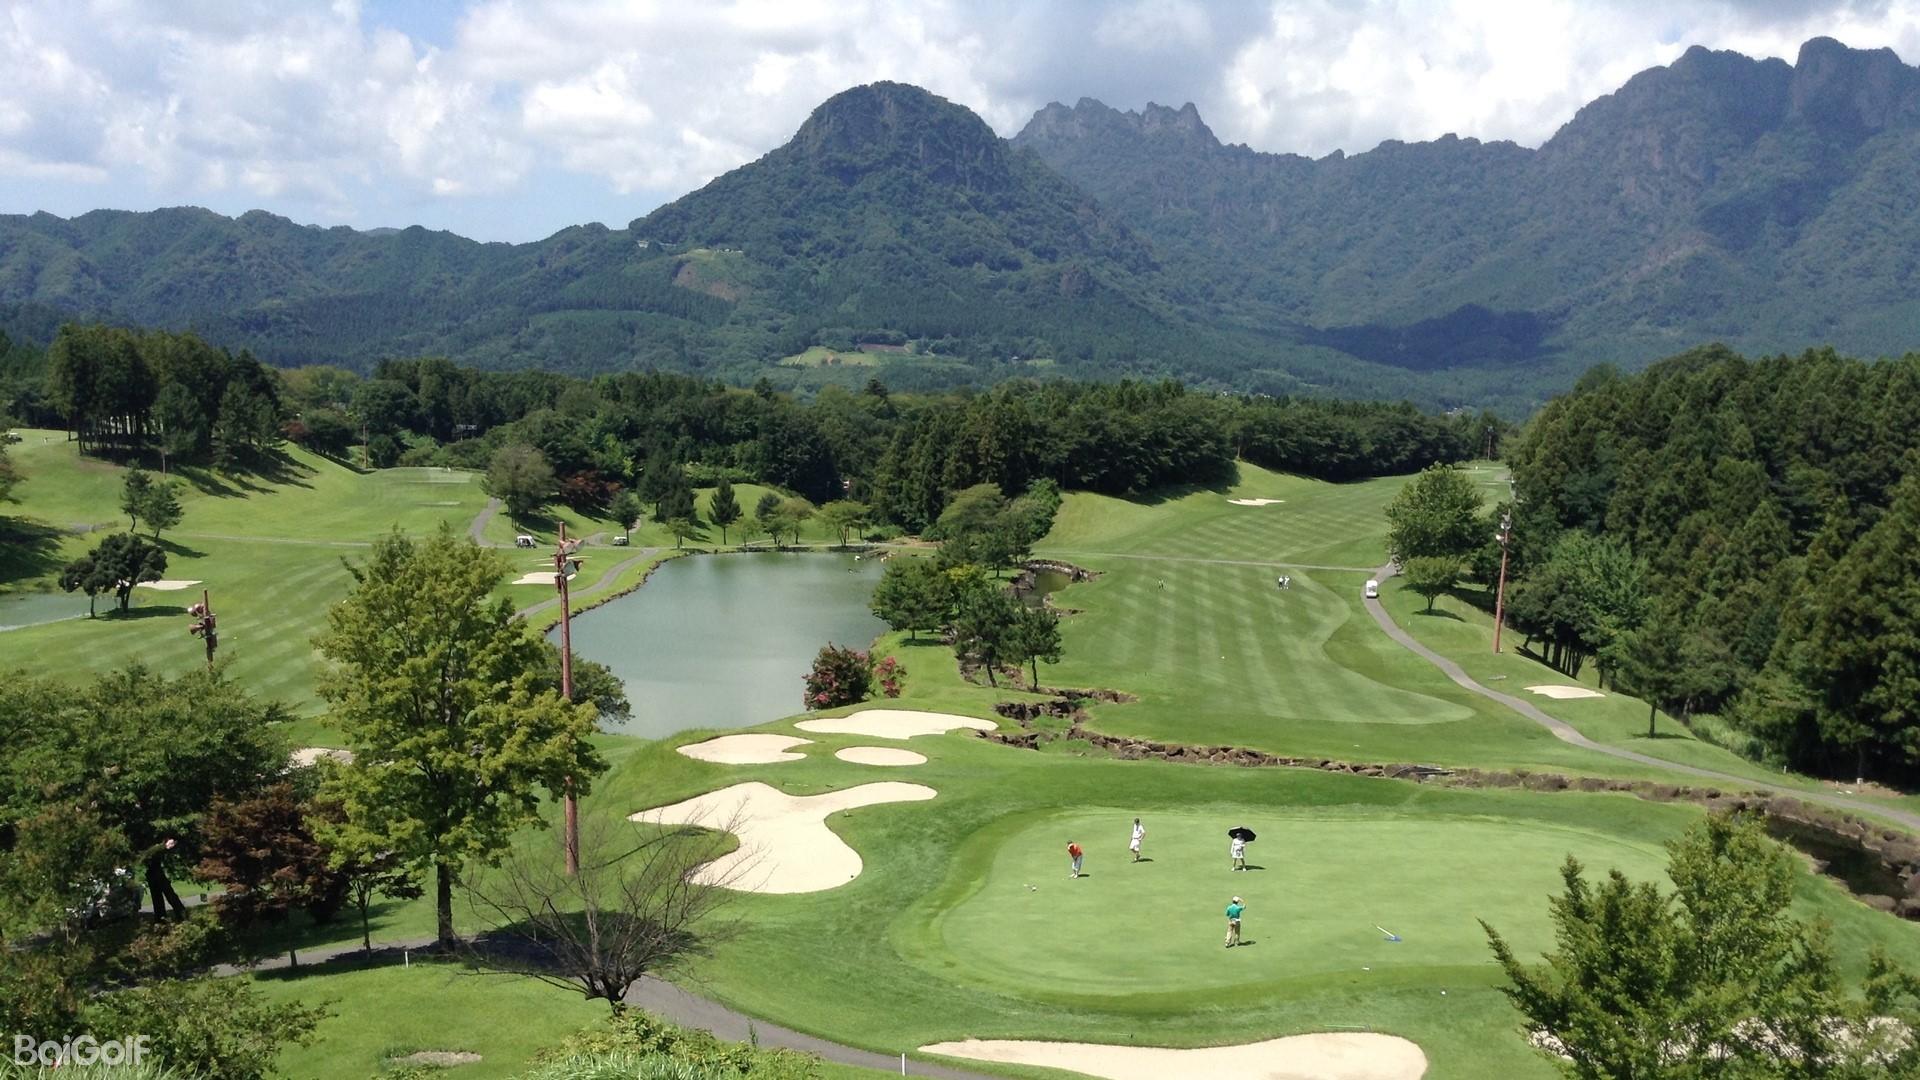 澳门高尔夫球乡村俱乐部 | 百高（BaiGolf） - 高尔夫球场预订,高尔夫旅游,日本高尔夫,泰国高尔夫,越南高尔夫,中国,韩国,亚洲及太平洋高尔夫